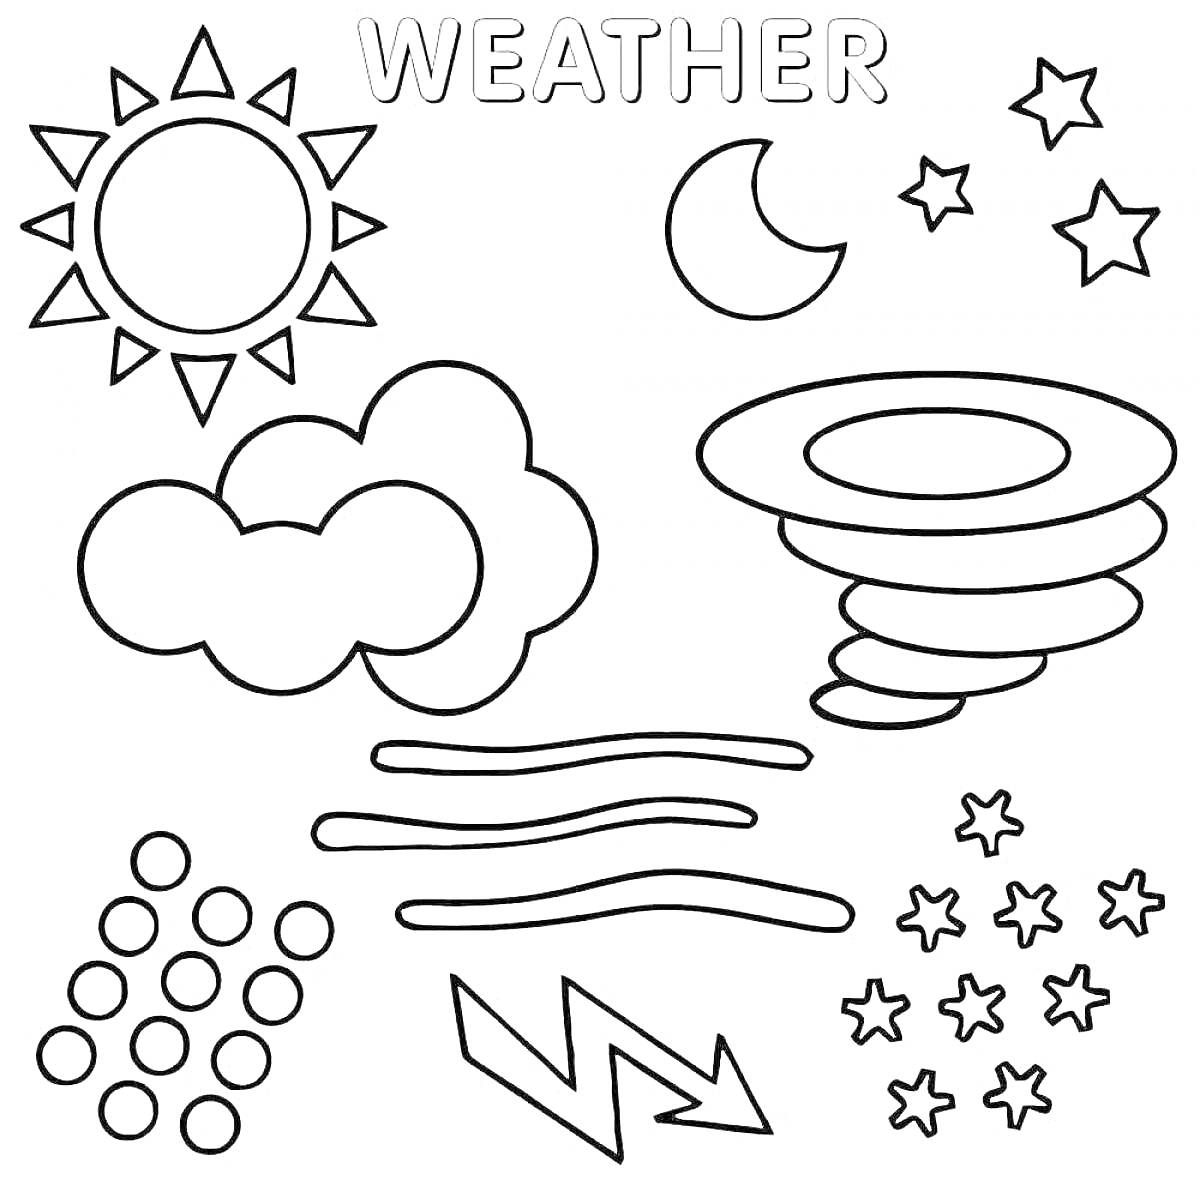 Раскраска Погода со всеми элементами: солнце, луна, облака, торнадо, дождь, ветер, молнии, звезды